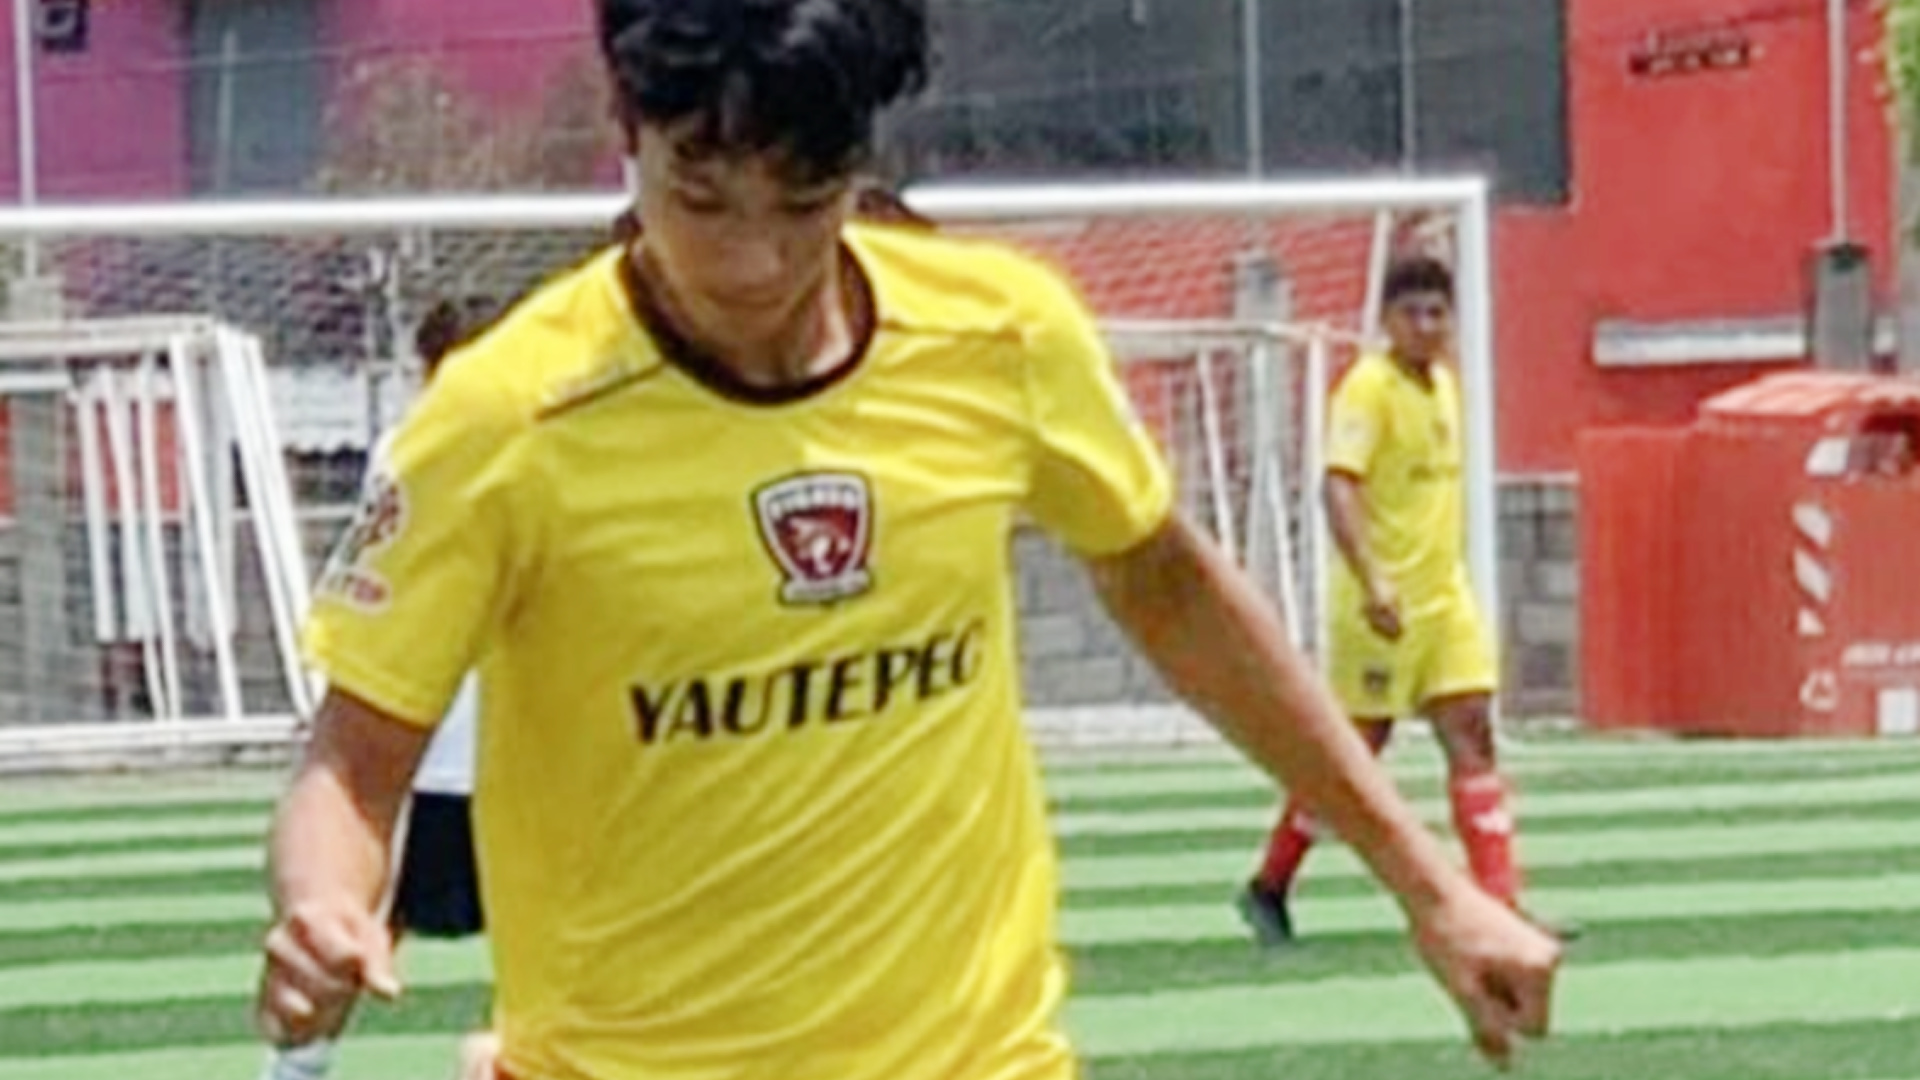 Tragedia in Messico: giovanissimo calciatore muore colpito da un fulmine